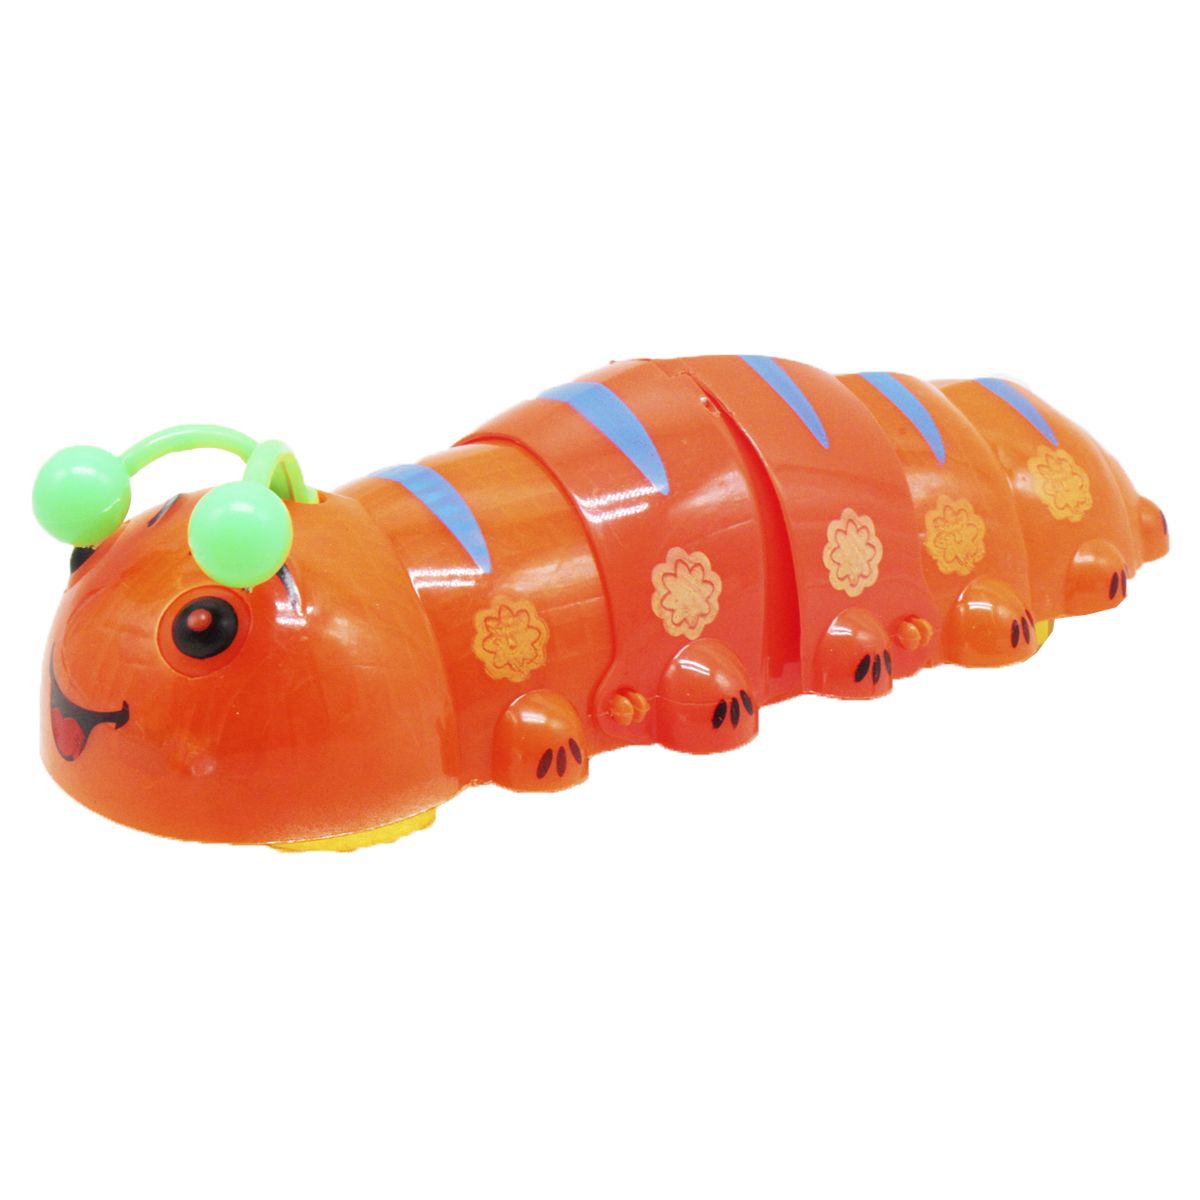 Музыкальная игрушка "Гусеница" (25 см), оранжевая